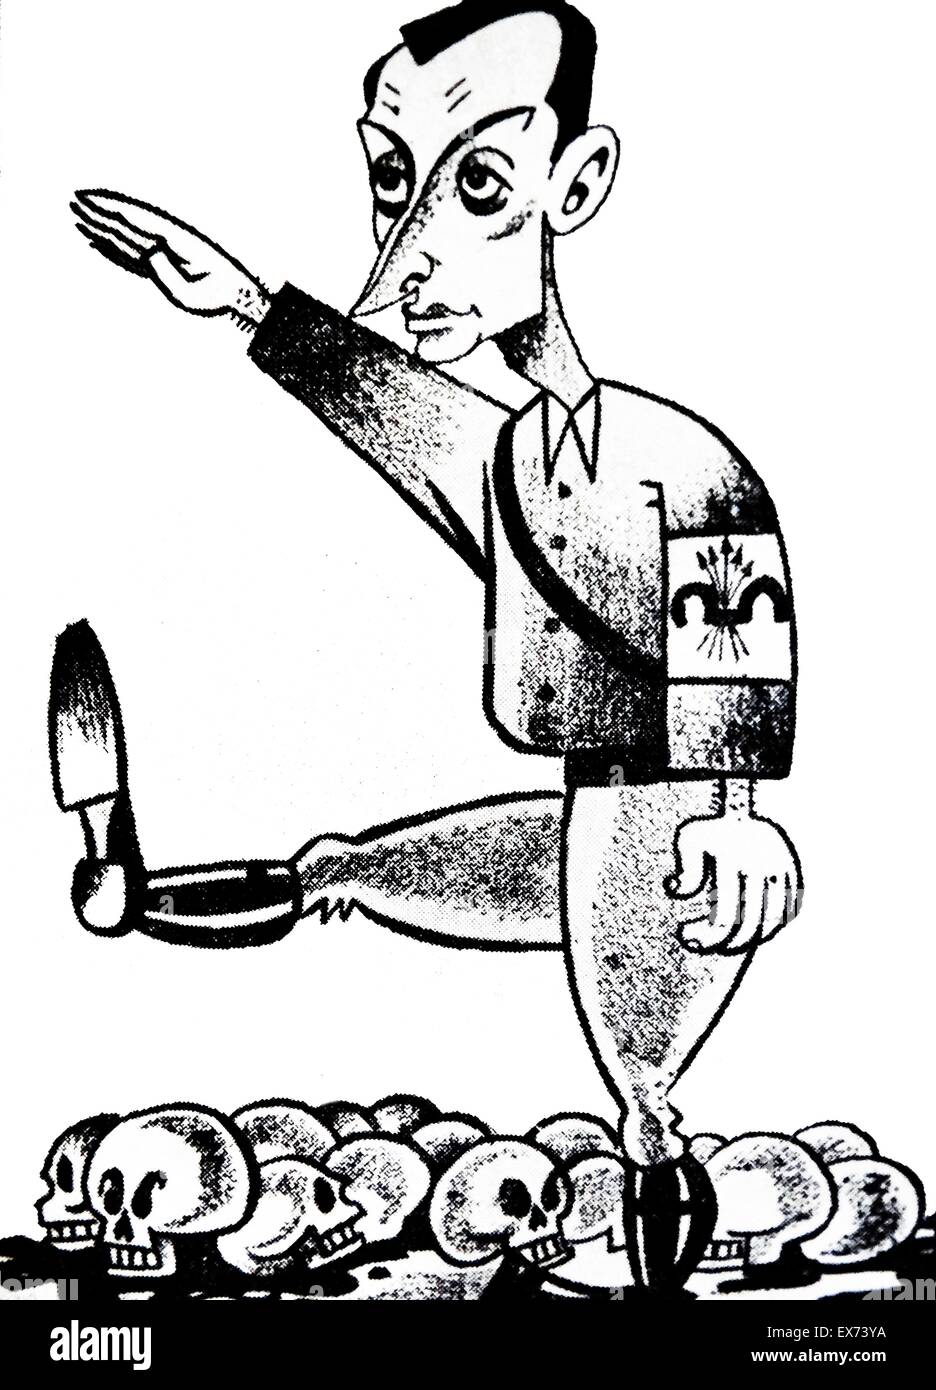 Caricature de Don José Antonio Primo de Rivera (1903 - 20 novembre 1936) Rivera fut le fondateur de la Falange Española ('Spanish' Phalanx). Il a été exécuté par le gouvernement républicain espagnol au cours de l'espagnol l'Waduring civile espagnole Banque D'Images